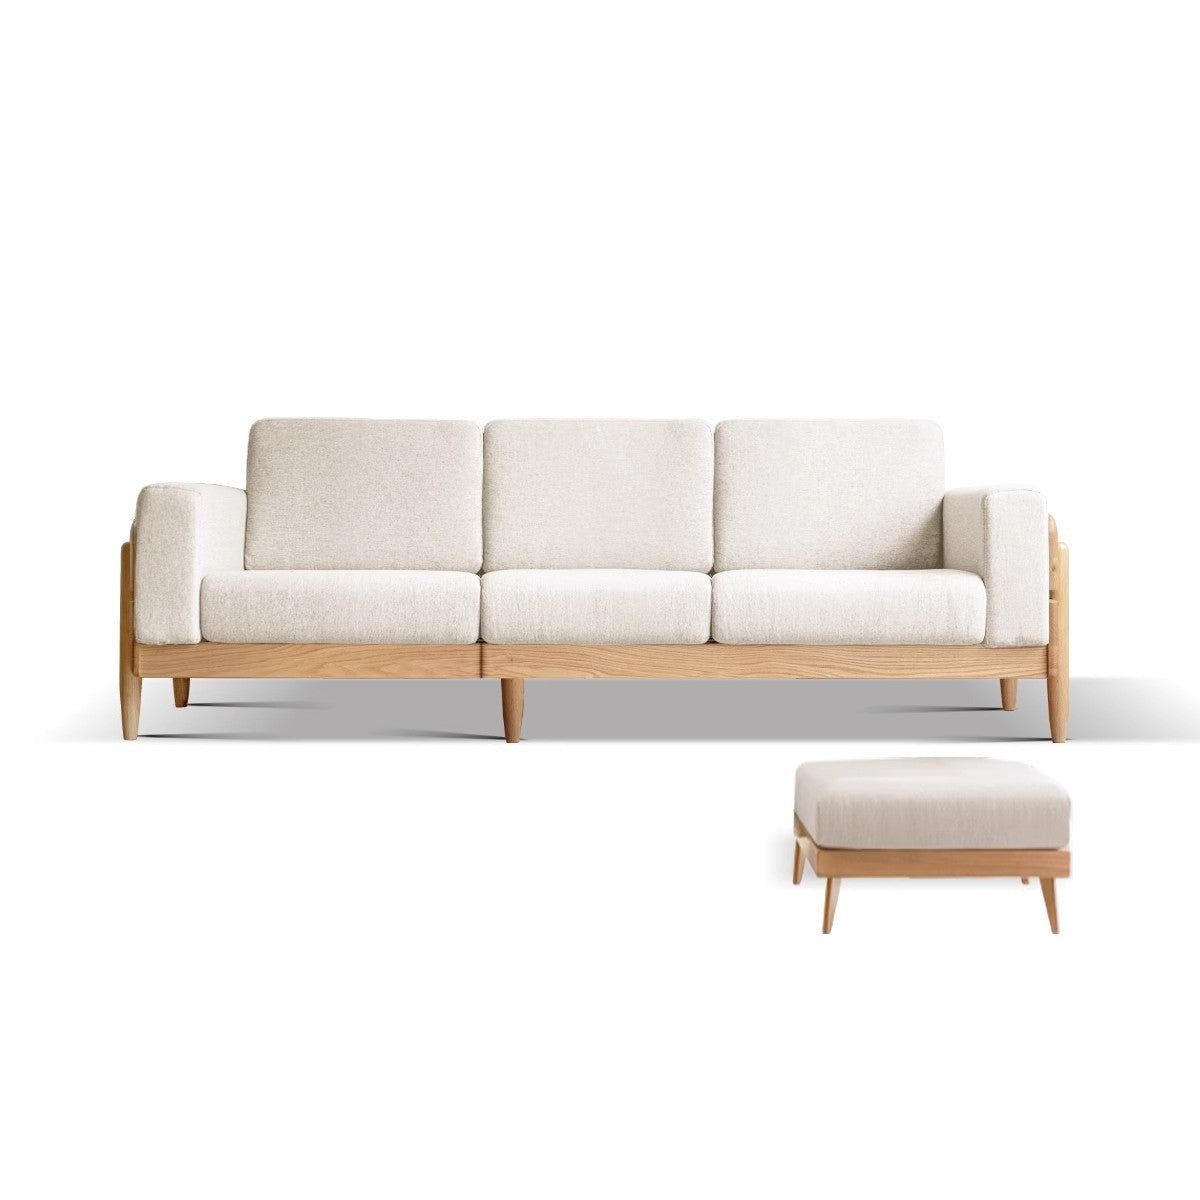 Oak, Ash Solid Wood Fabric Sofa"